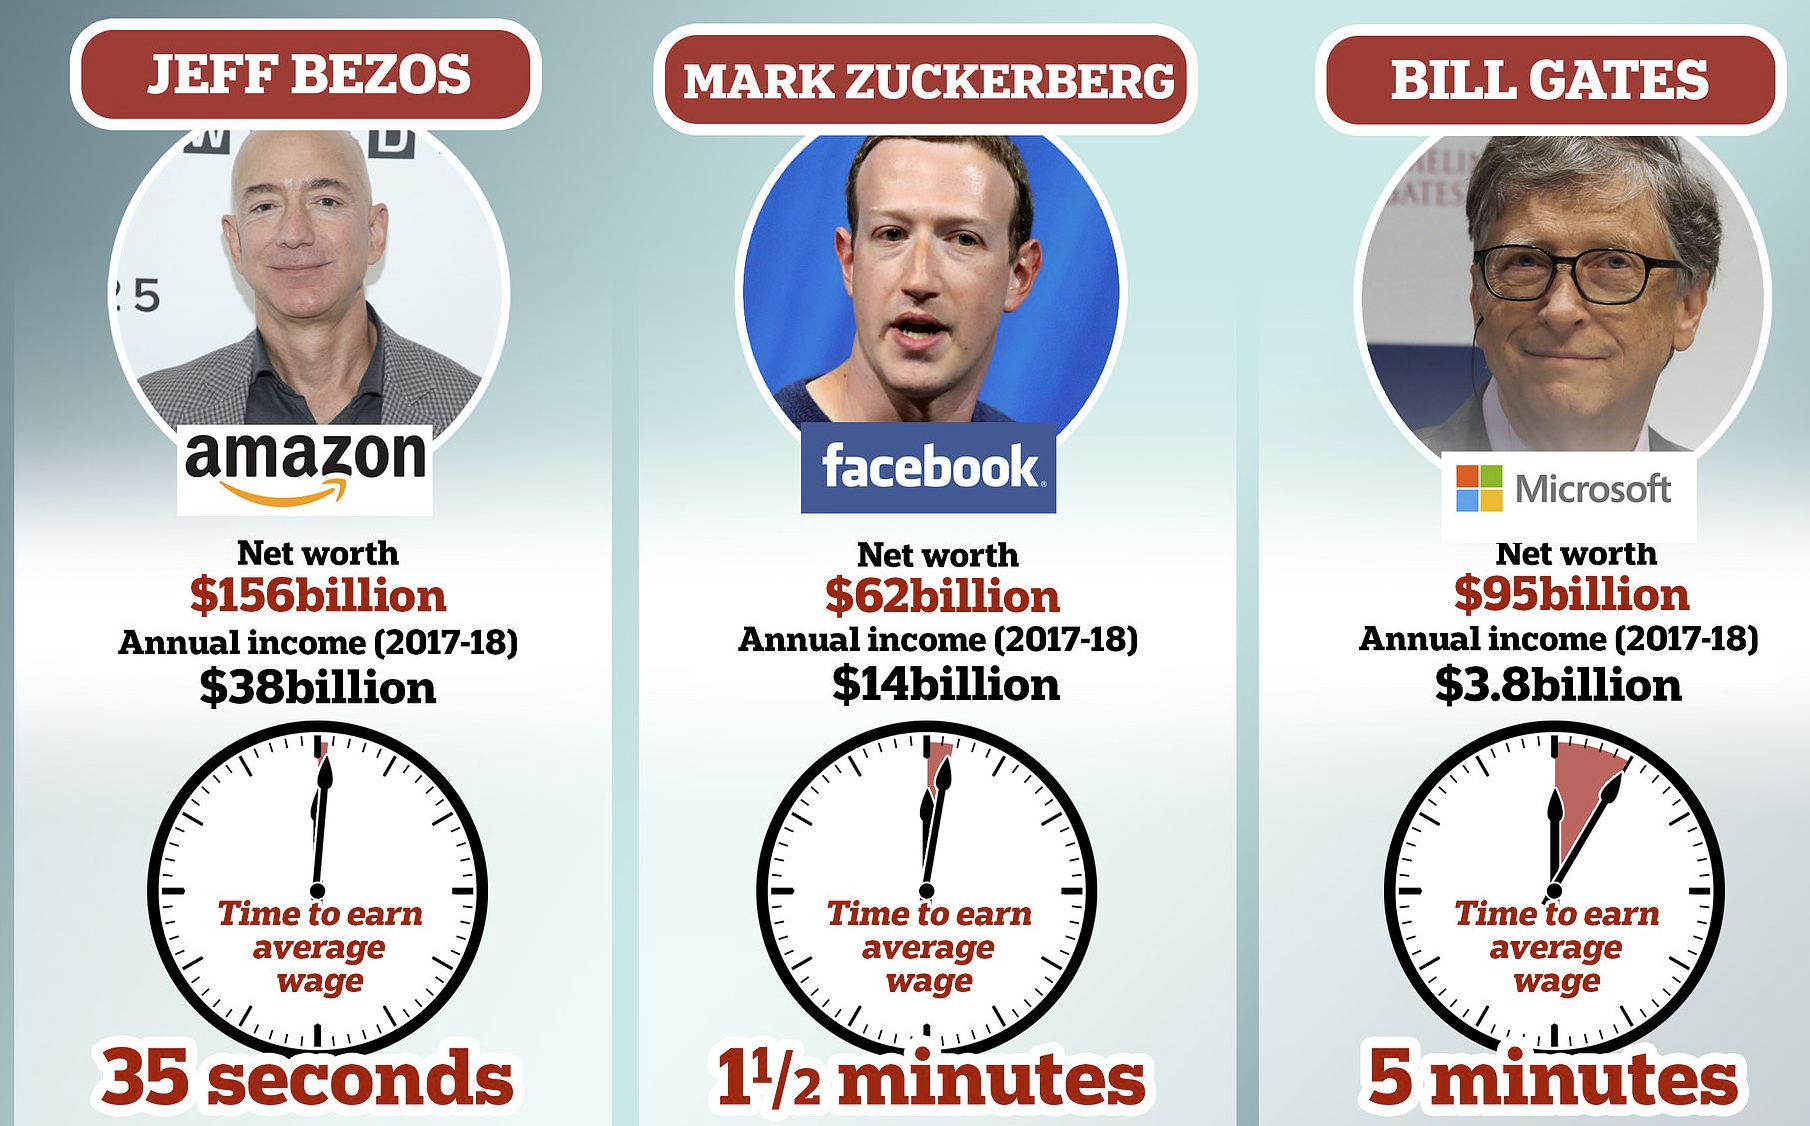 Calculating Bezos' Earnings Per Minute